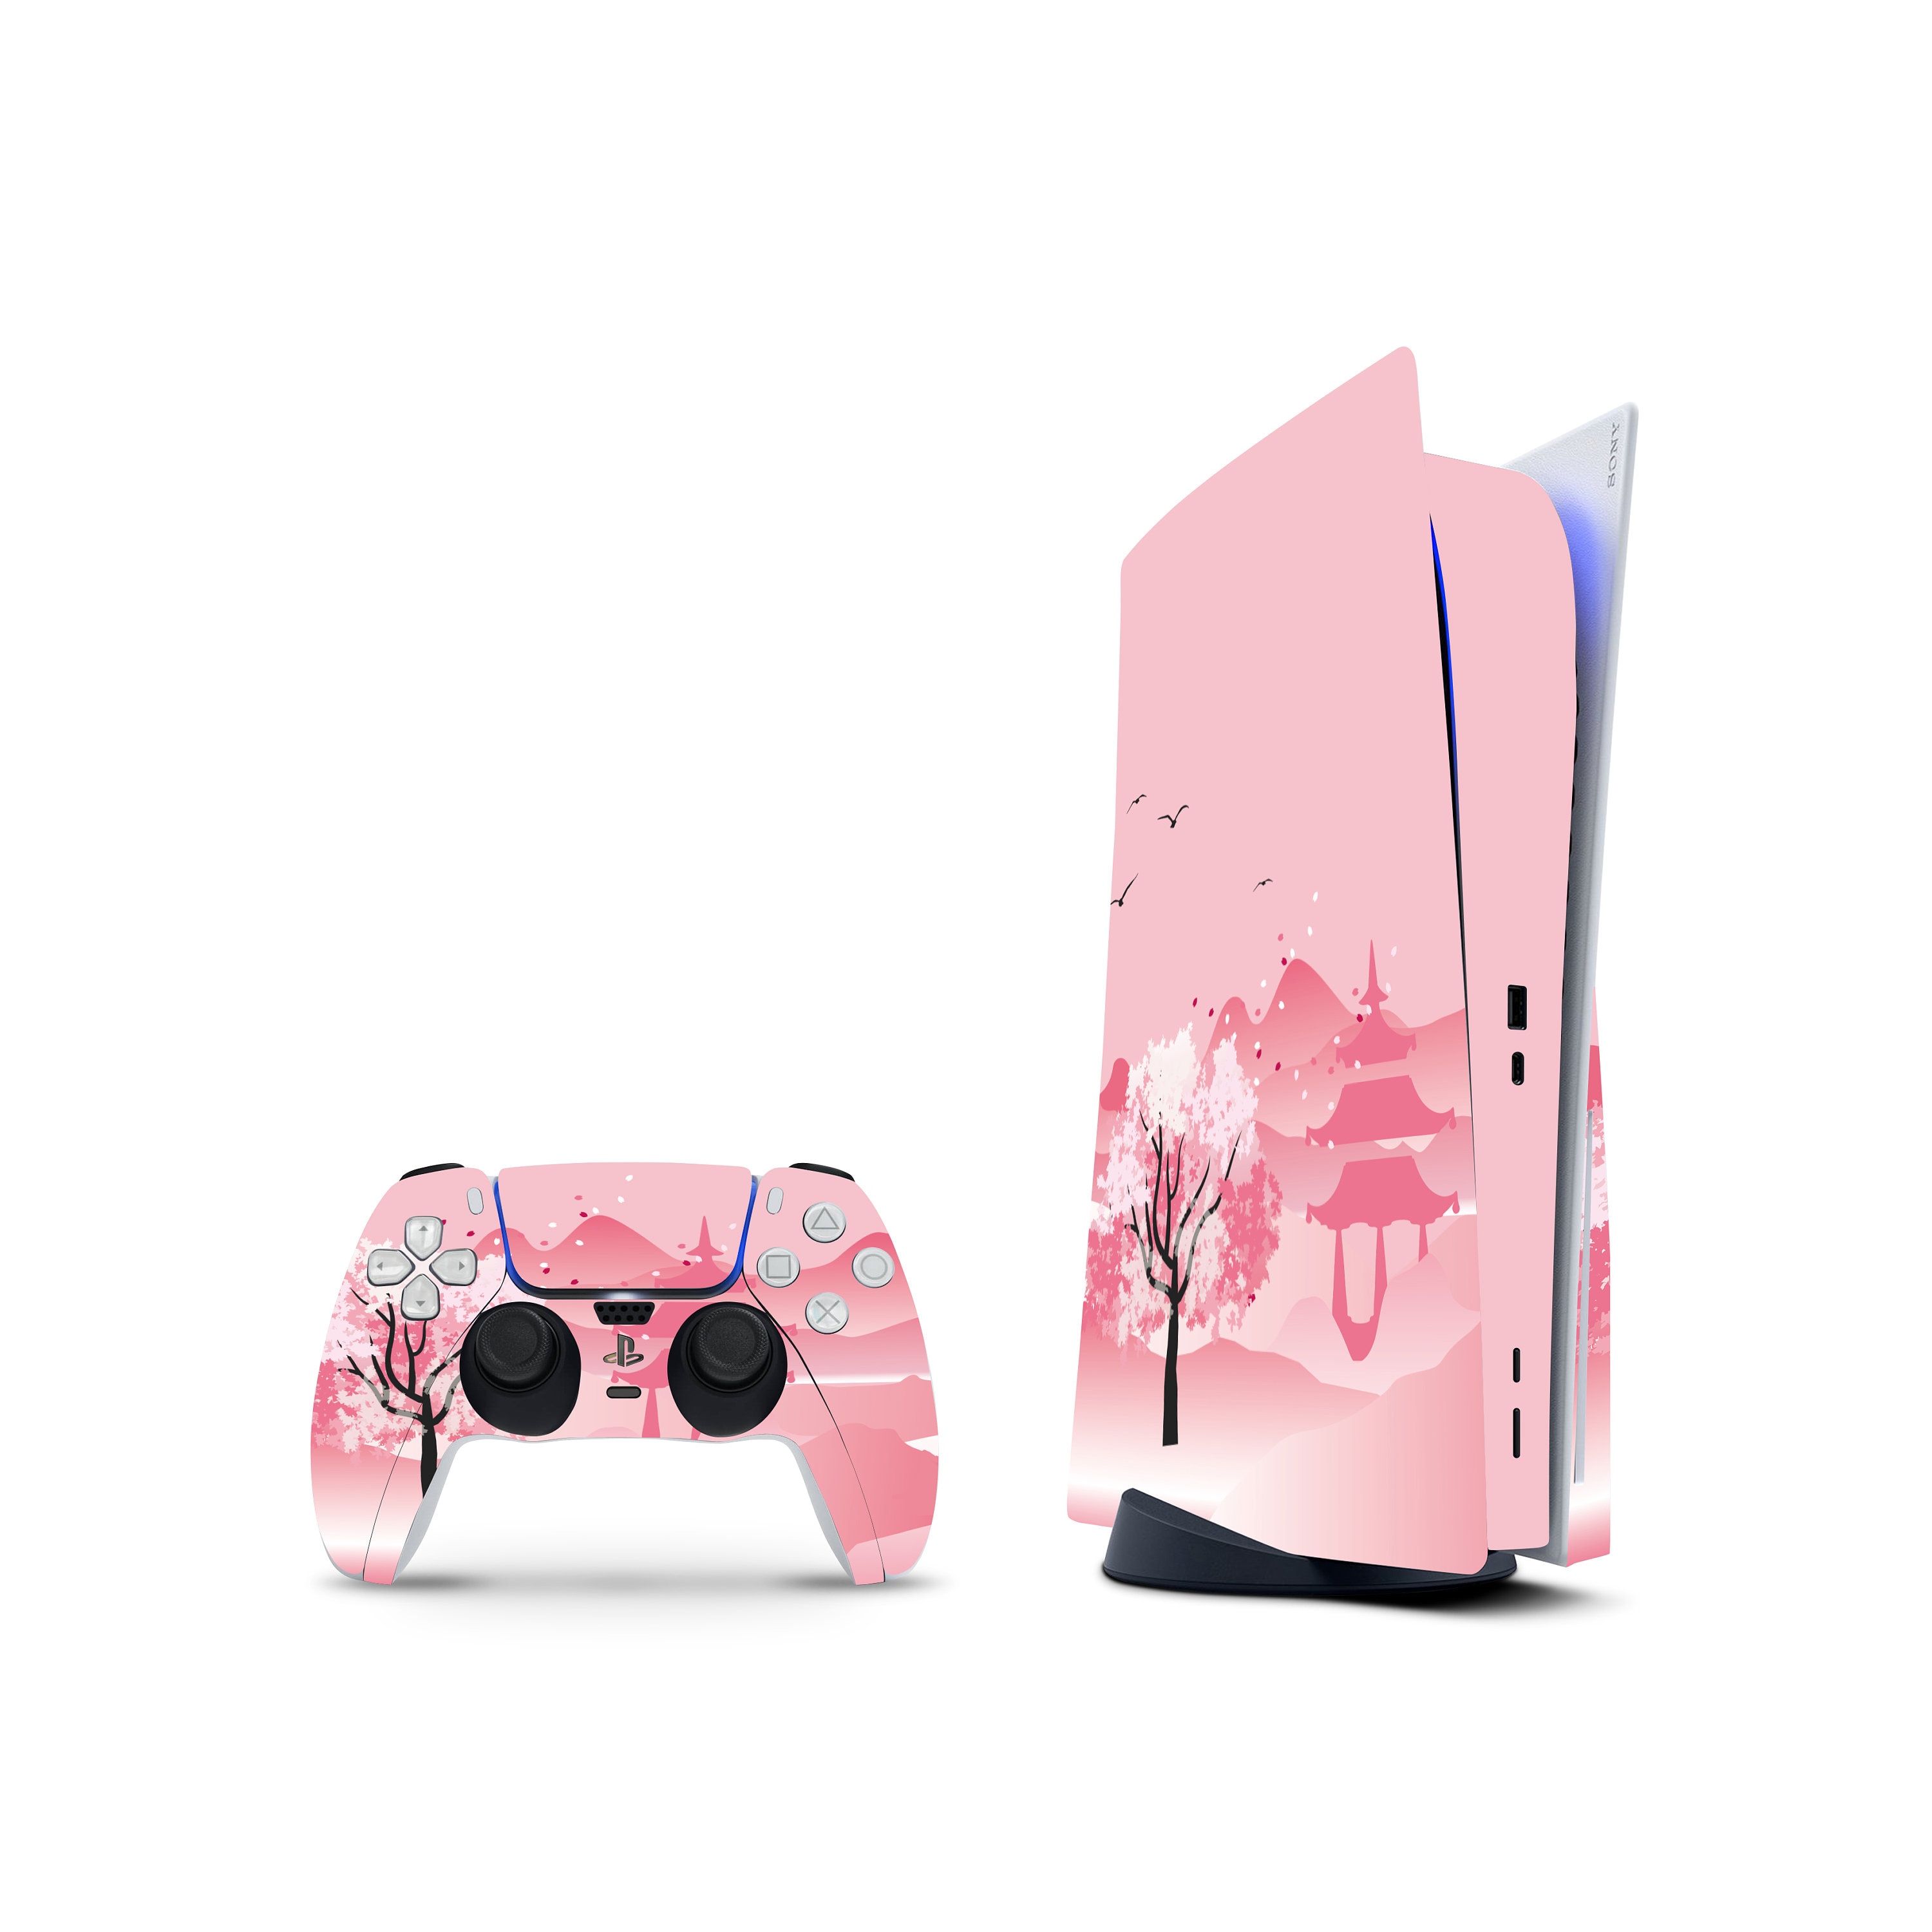 Incroyable habillage rose marbré pour PS5, motif marbré liquide esthétique,  habillage de manette PlayStation 5 Dualsense, décalcomanie personnalisée  pour console PS5, vinyle 3M -  France